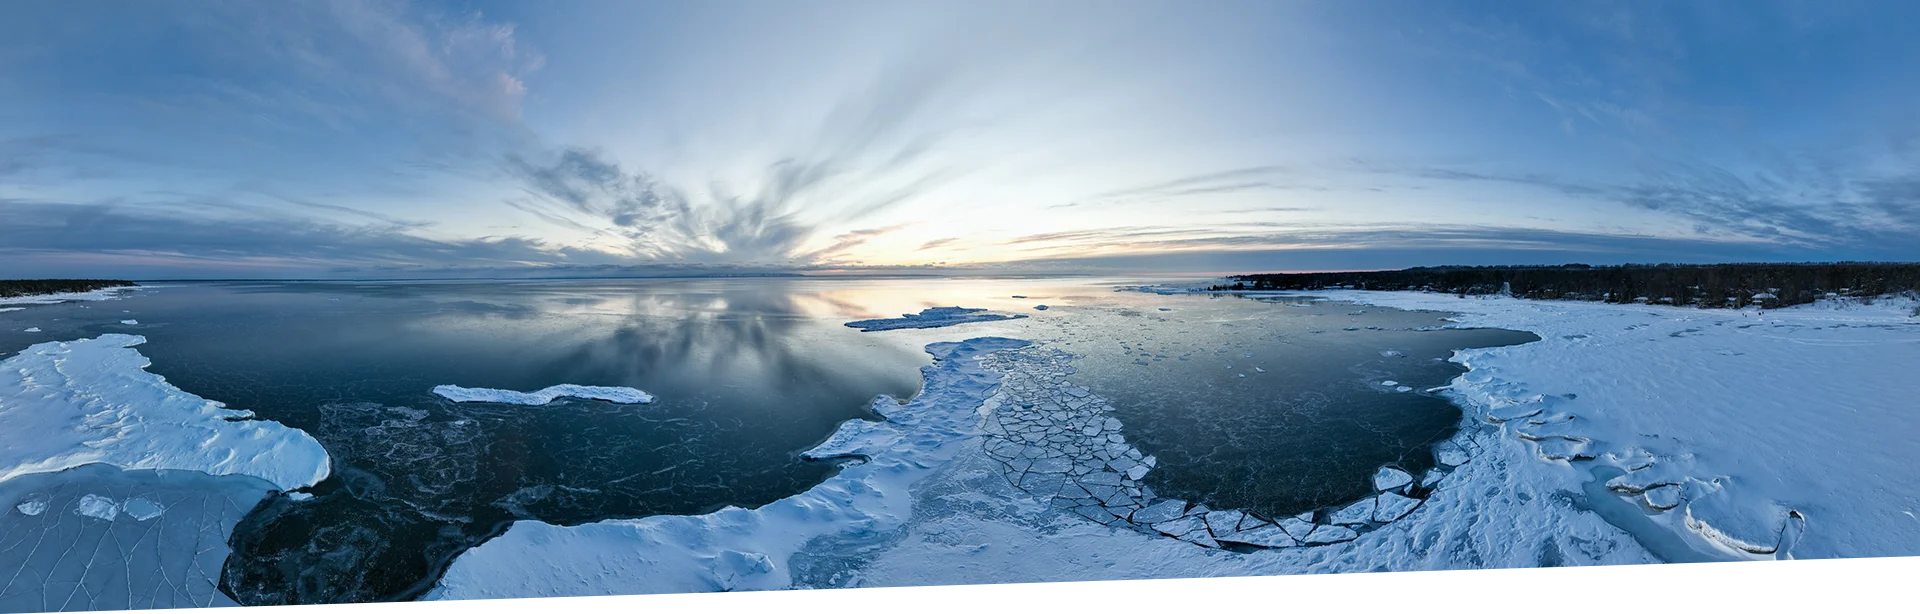 jezioro oblodzone lodem